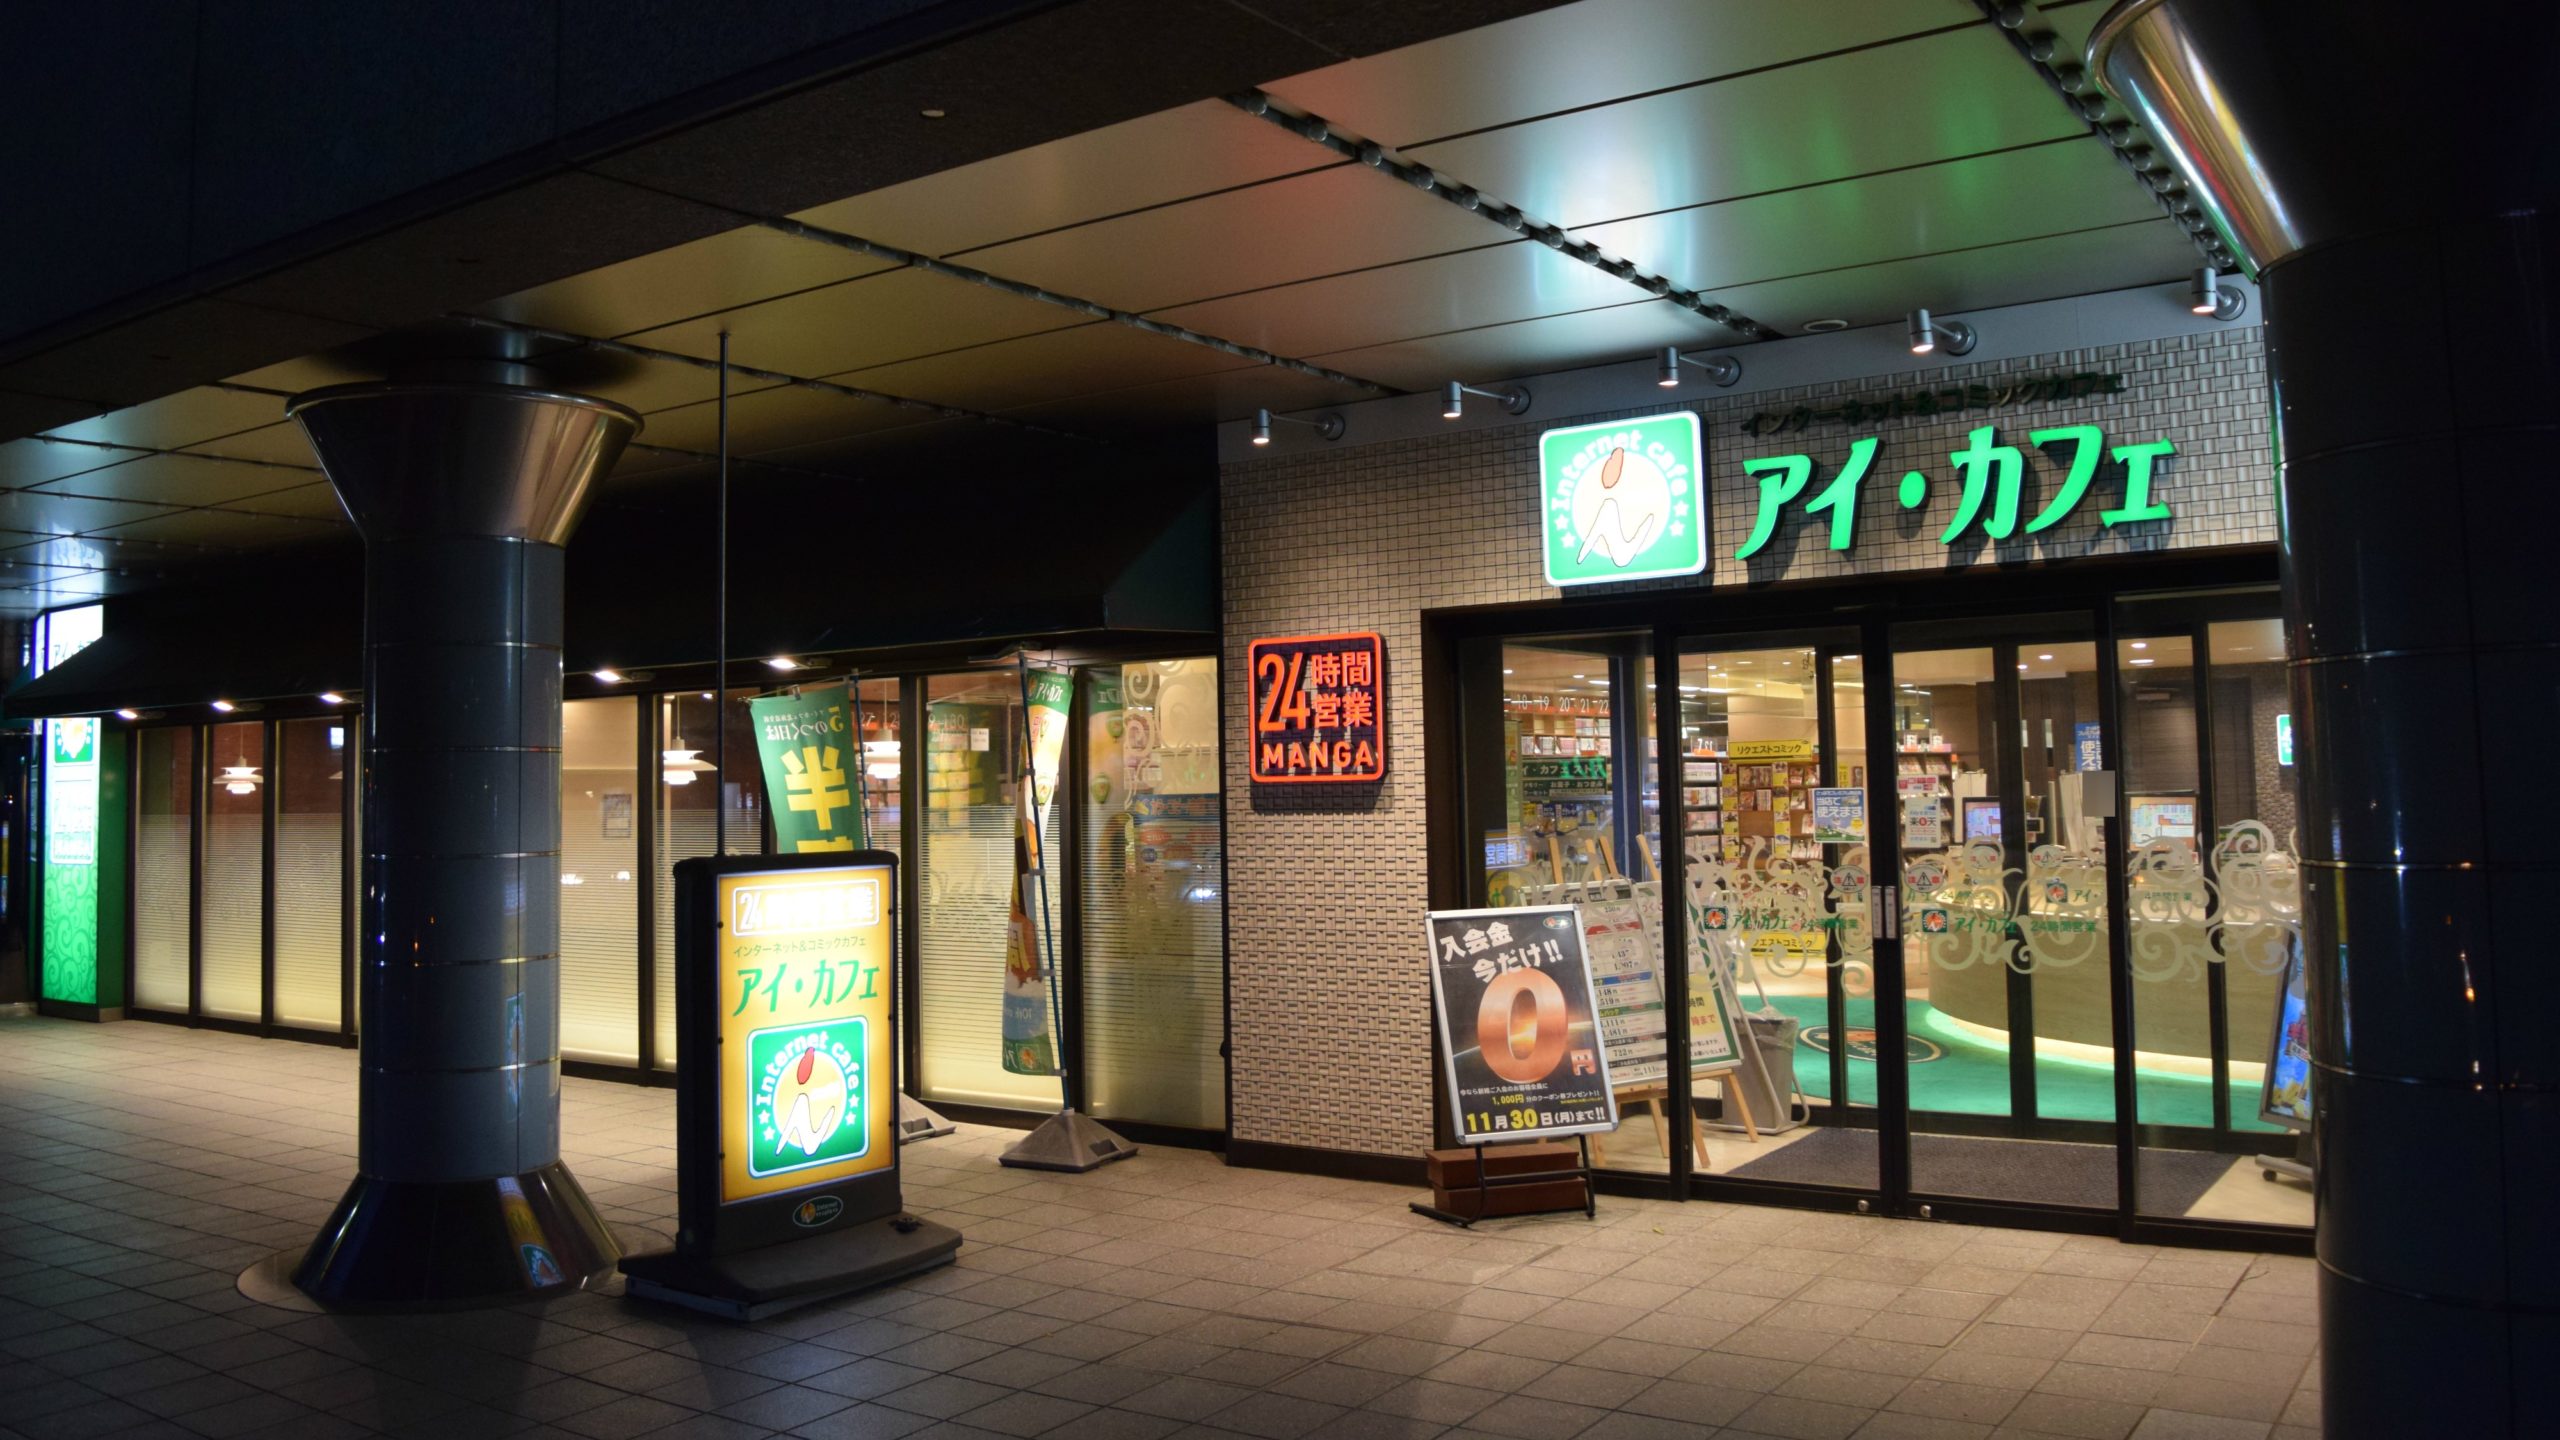 札幌駅周辺のコインシャワー・シャワールームがあるインターネットカフェ一覧